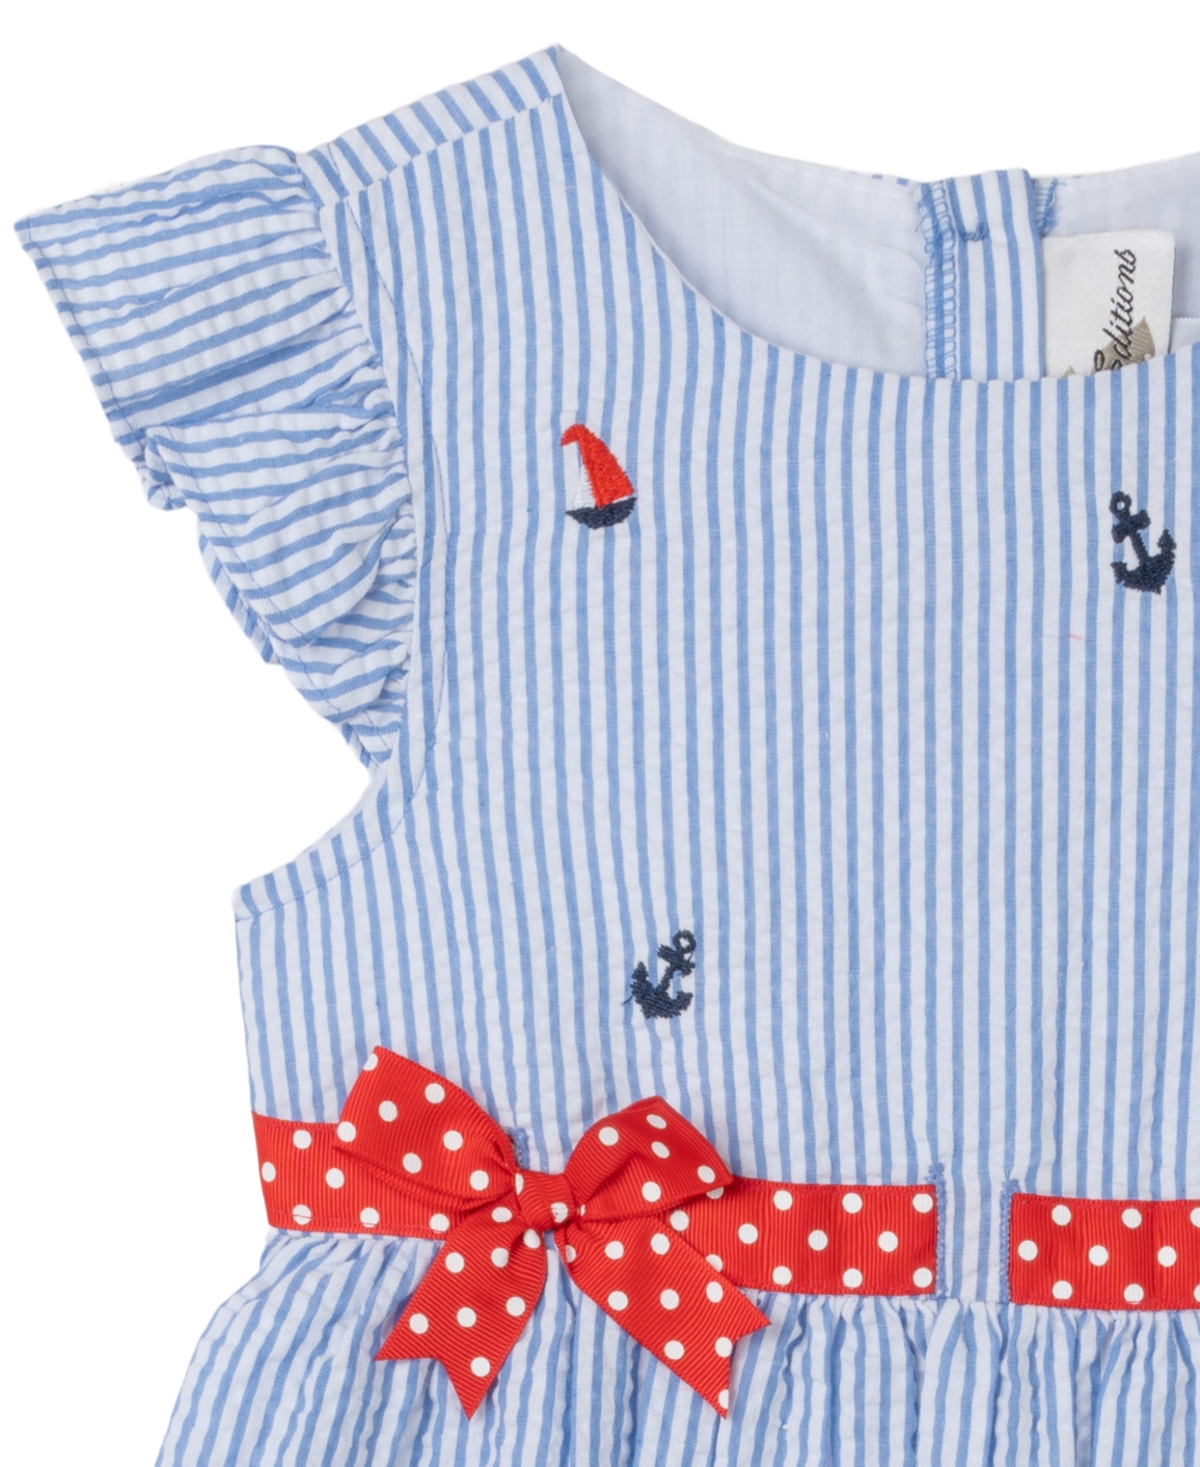 Shop Rare Editions Toddler Girls Nautical Flutter Sleeve Seersucker Dress In Blue